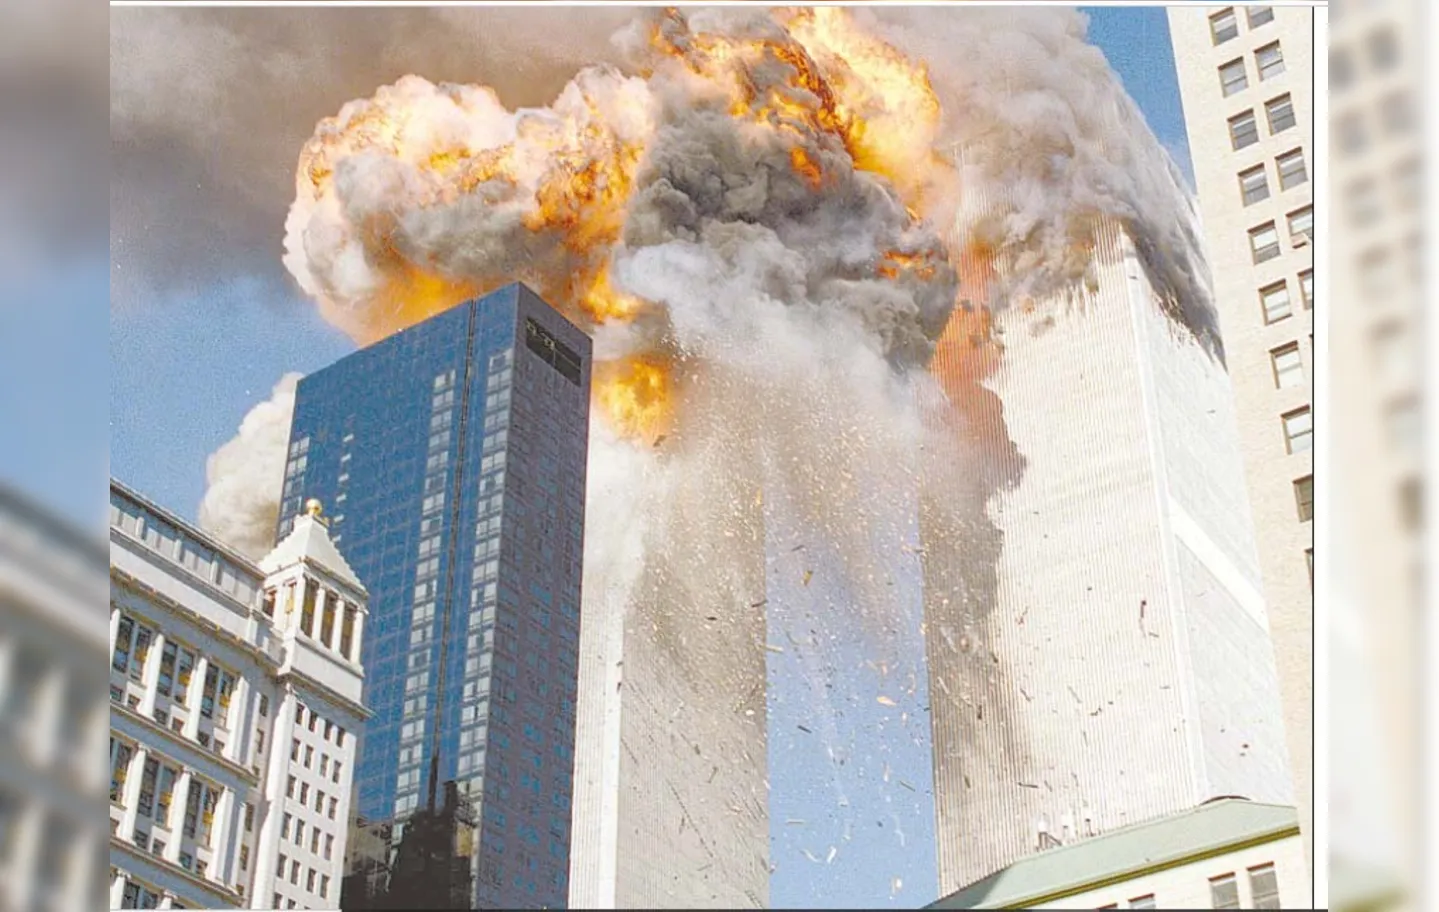 Em 12 de setembro de 2001 A TARDE trouxe ampla cobertura sobre atentados ocorridos em Nova Iorque. Foto: Reprodução Cedoc A TARDE.